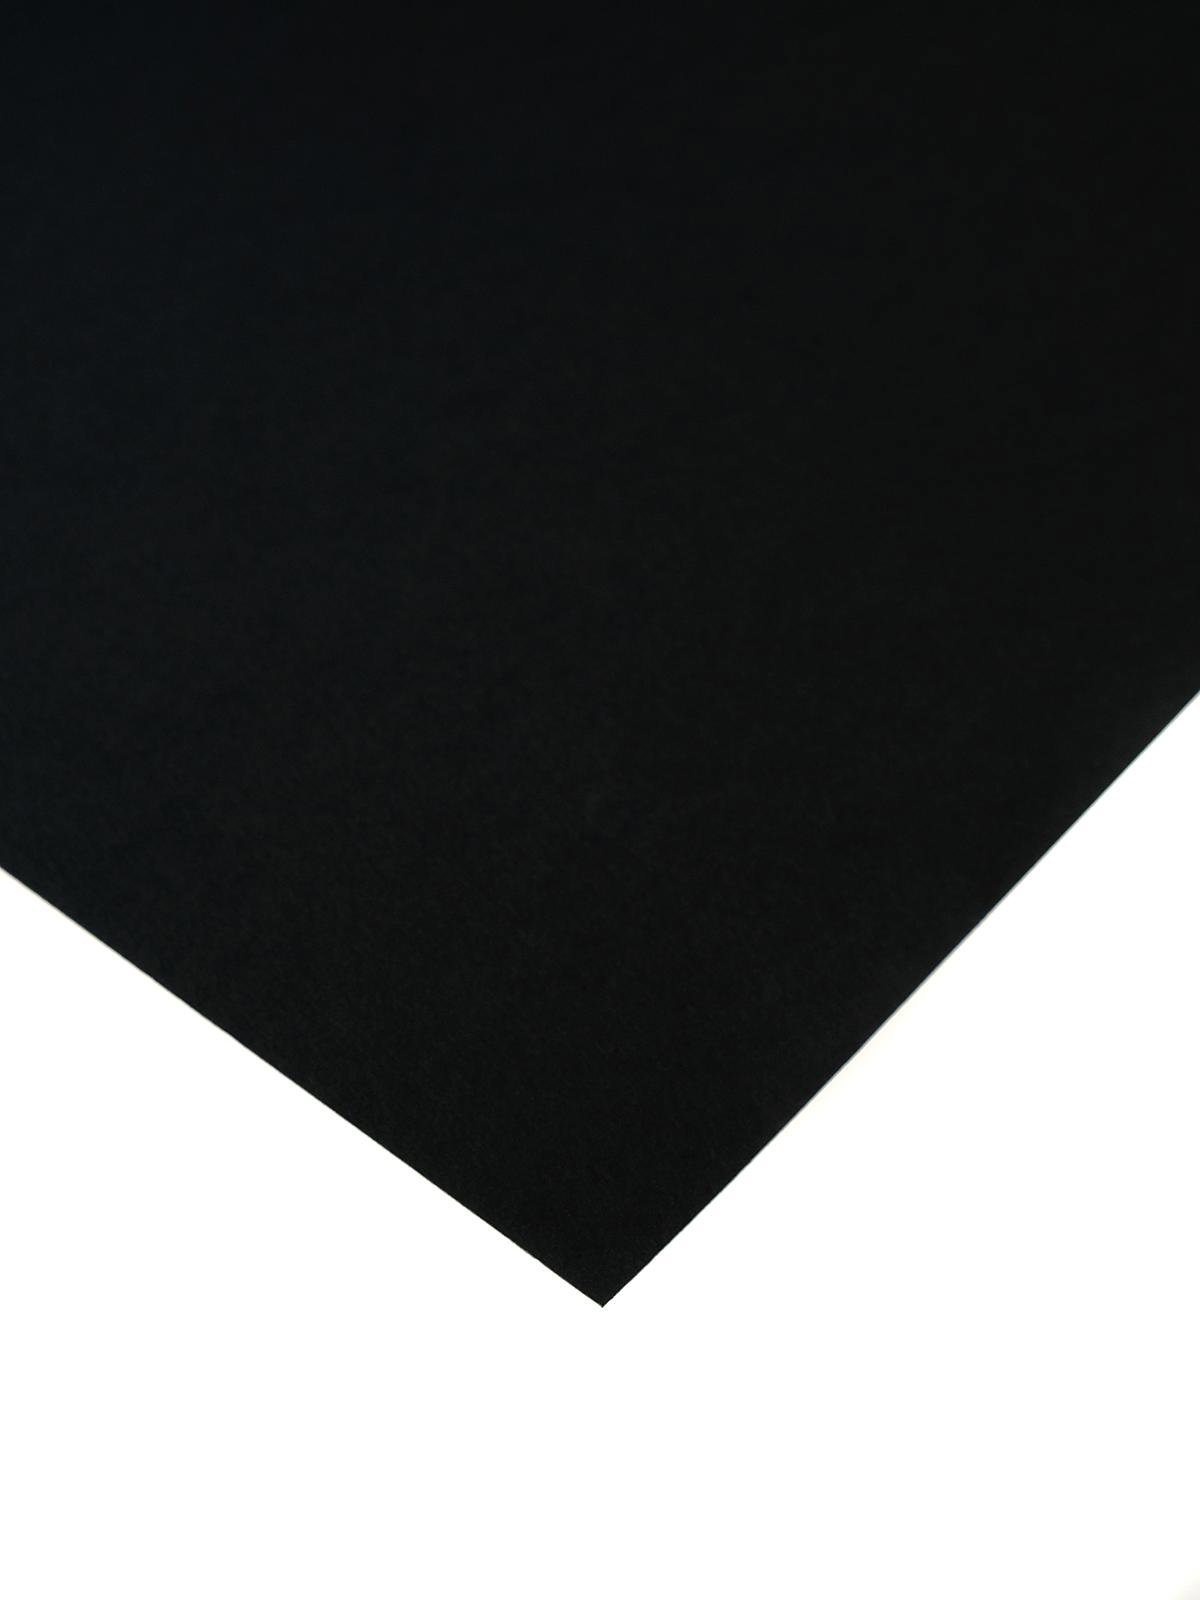 Canson Colorline Art Paper - 19 x 25, 300 gsm, Black